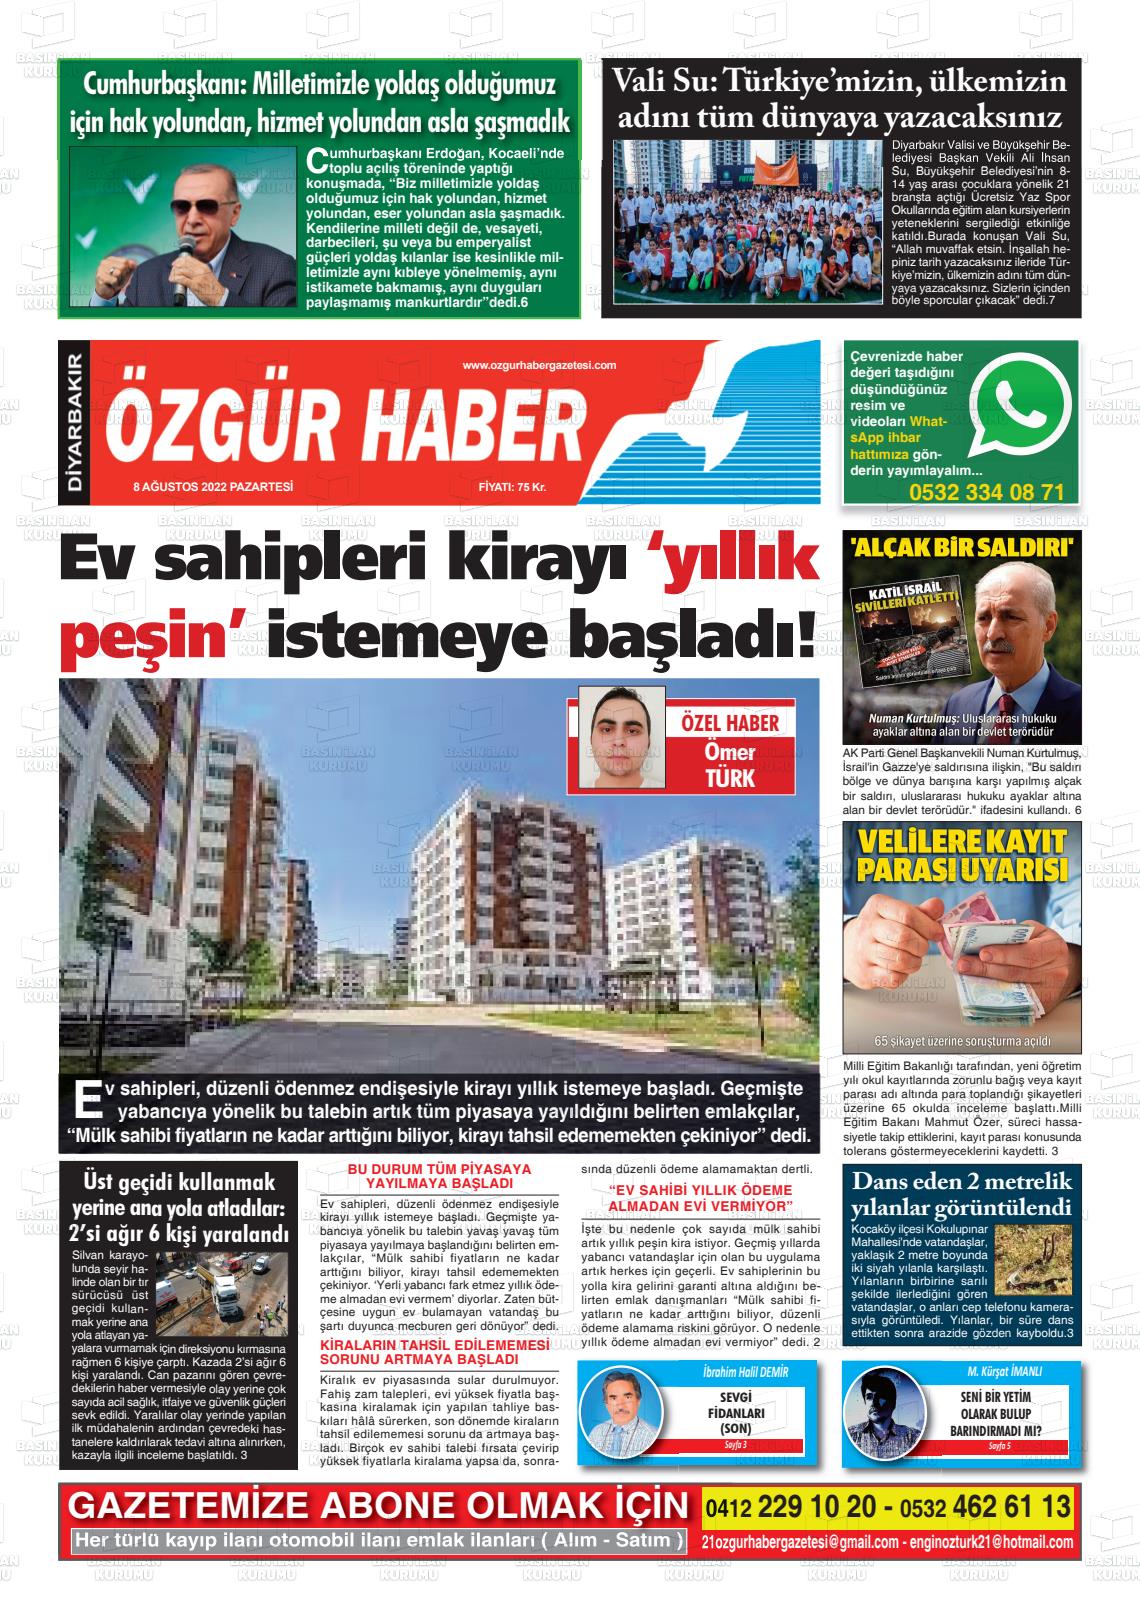 08 Ağustos 2022 Özgür Haber Gazete Manşeti